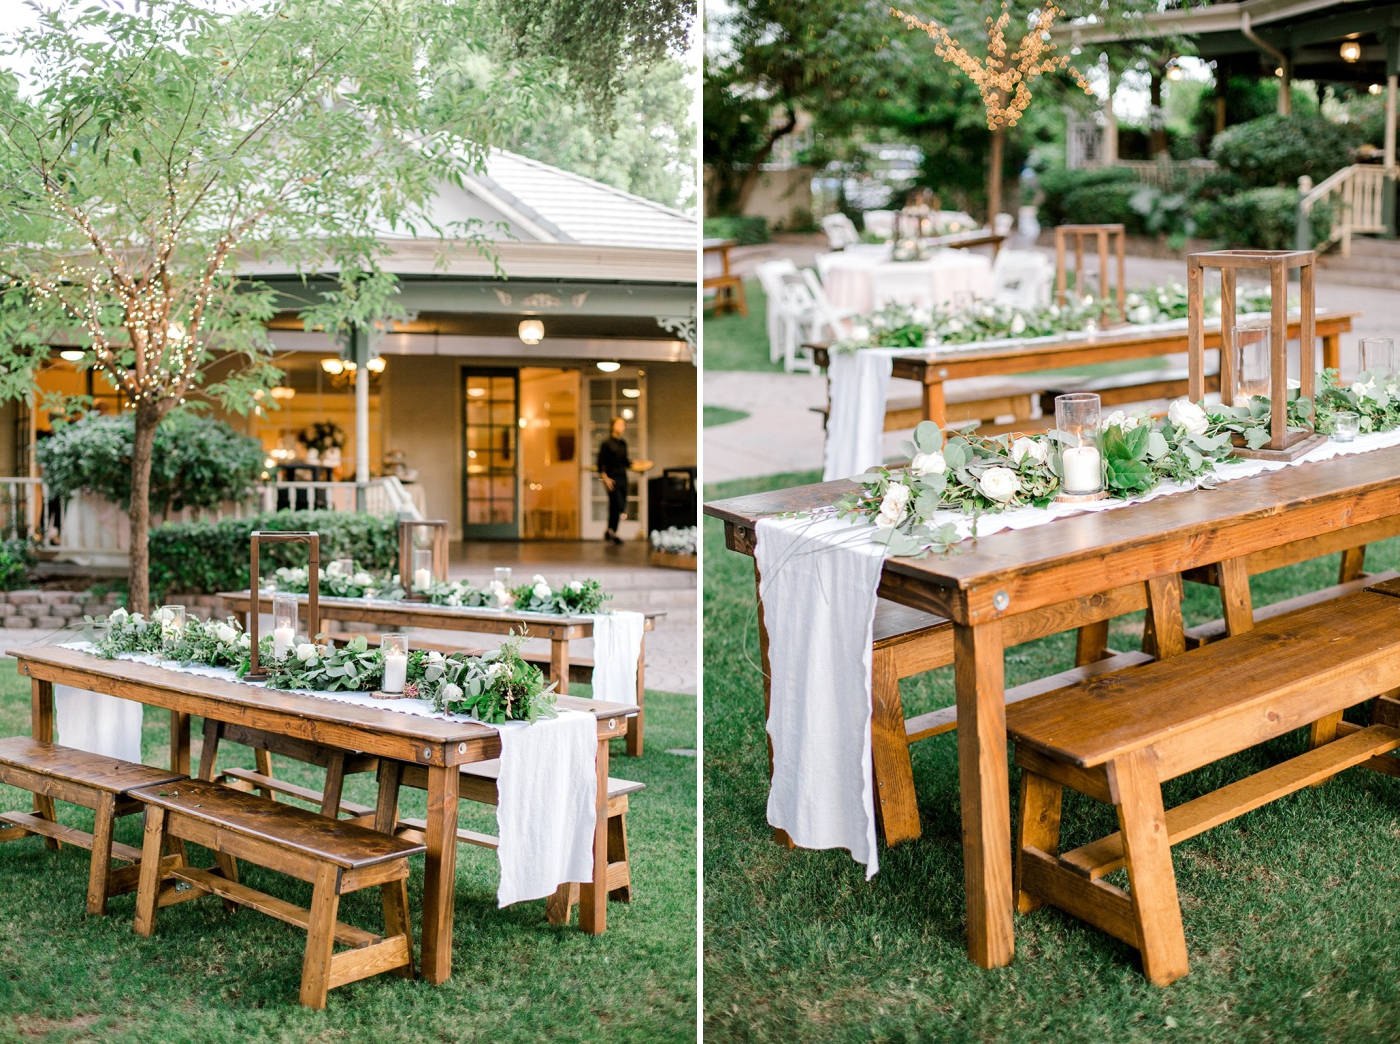 Top 5 Outdoor Wedding Venues In Arizona - Wood-n-Crate Designs